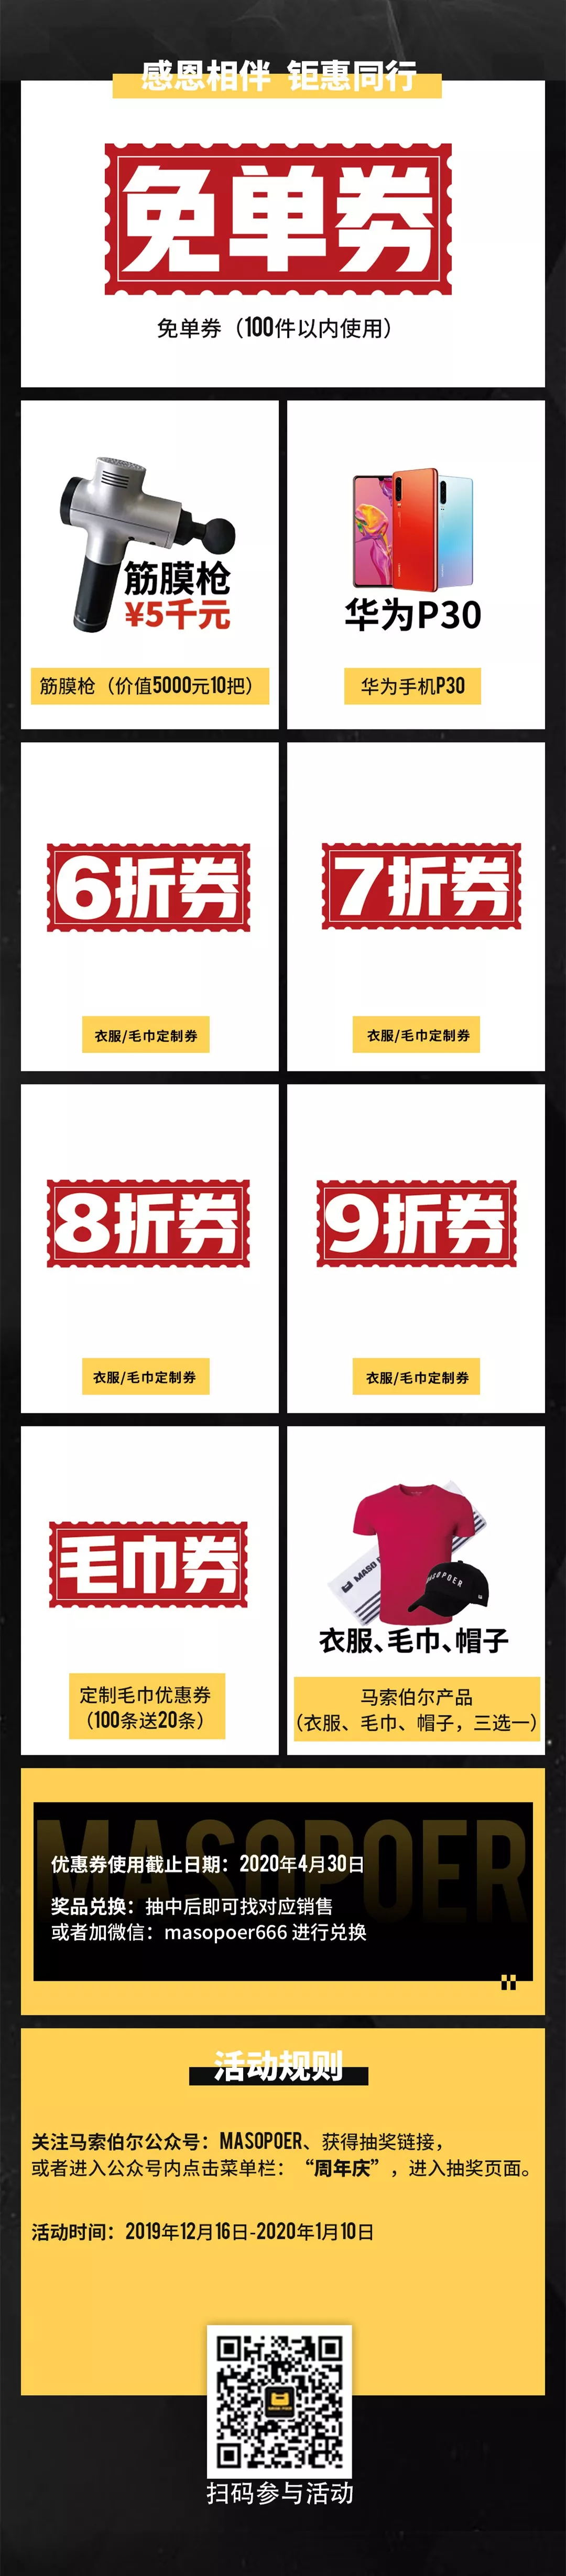 640 (1)_看图王.web.jpg